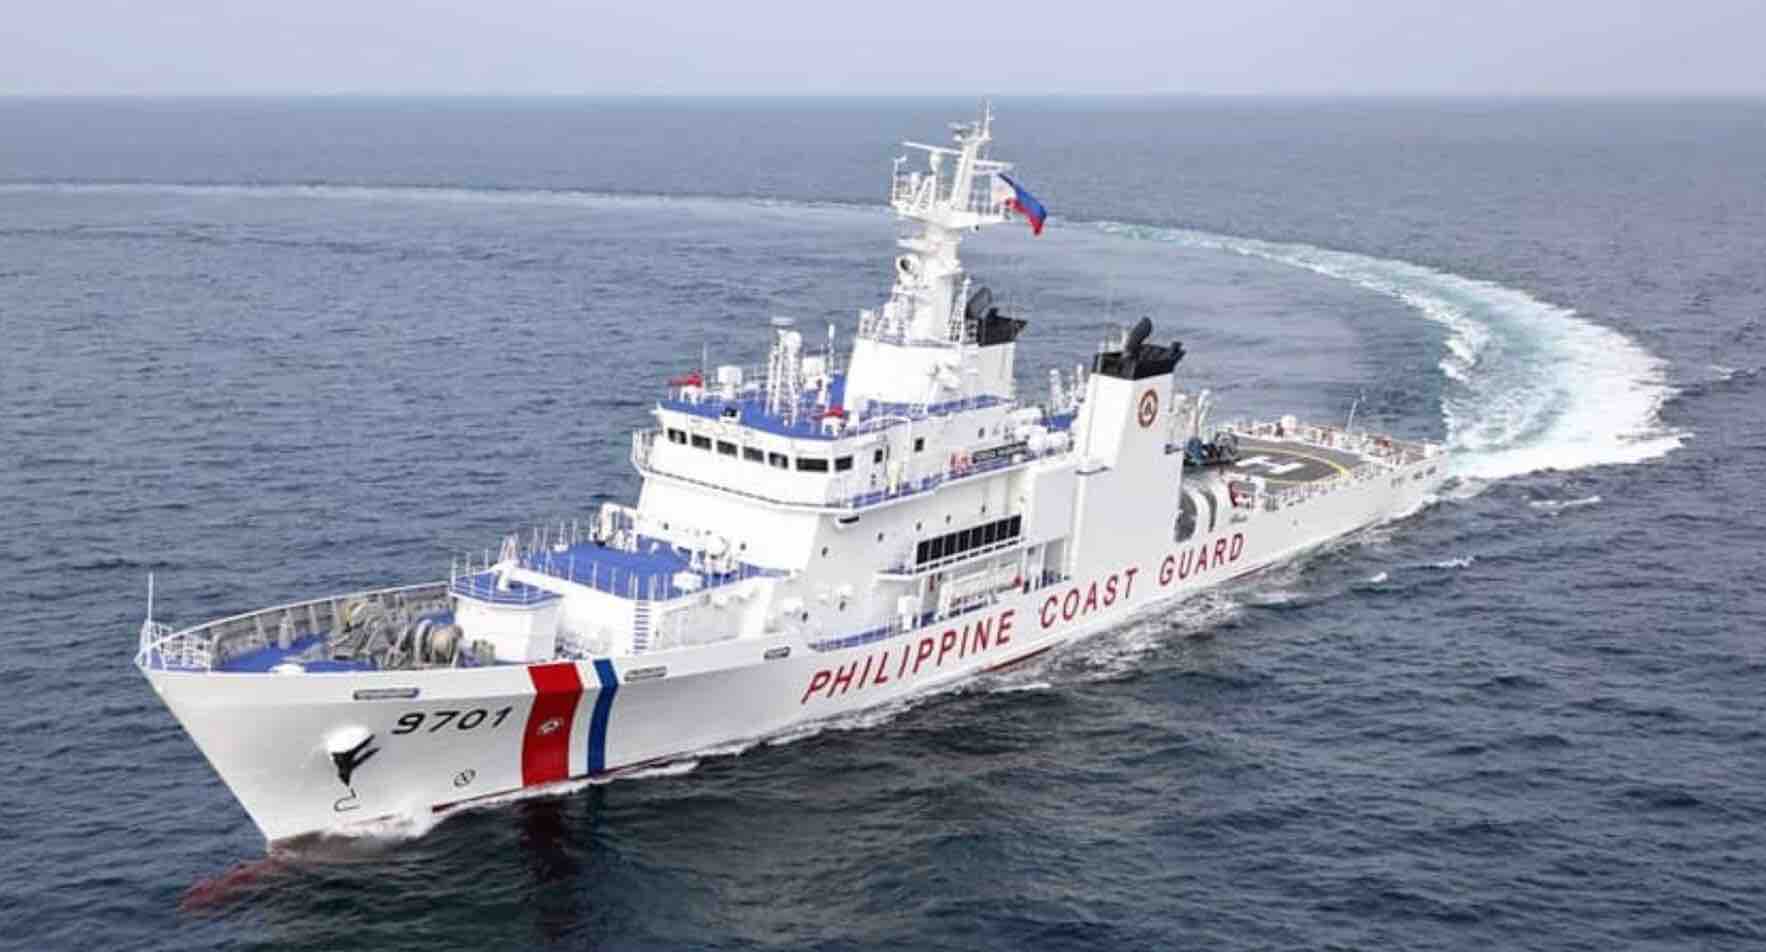 a Filipino coast guard vessel 